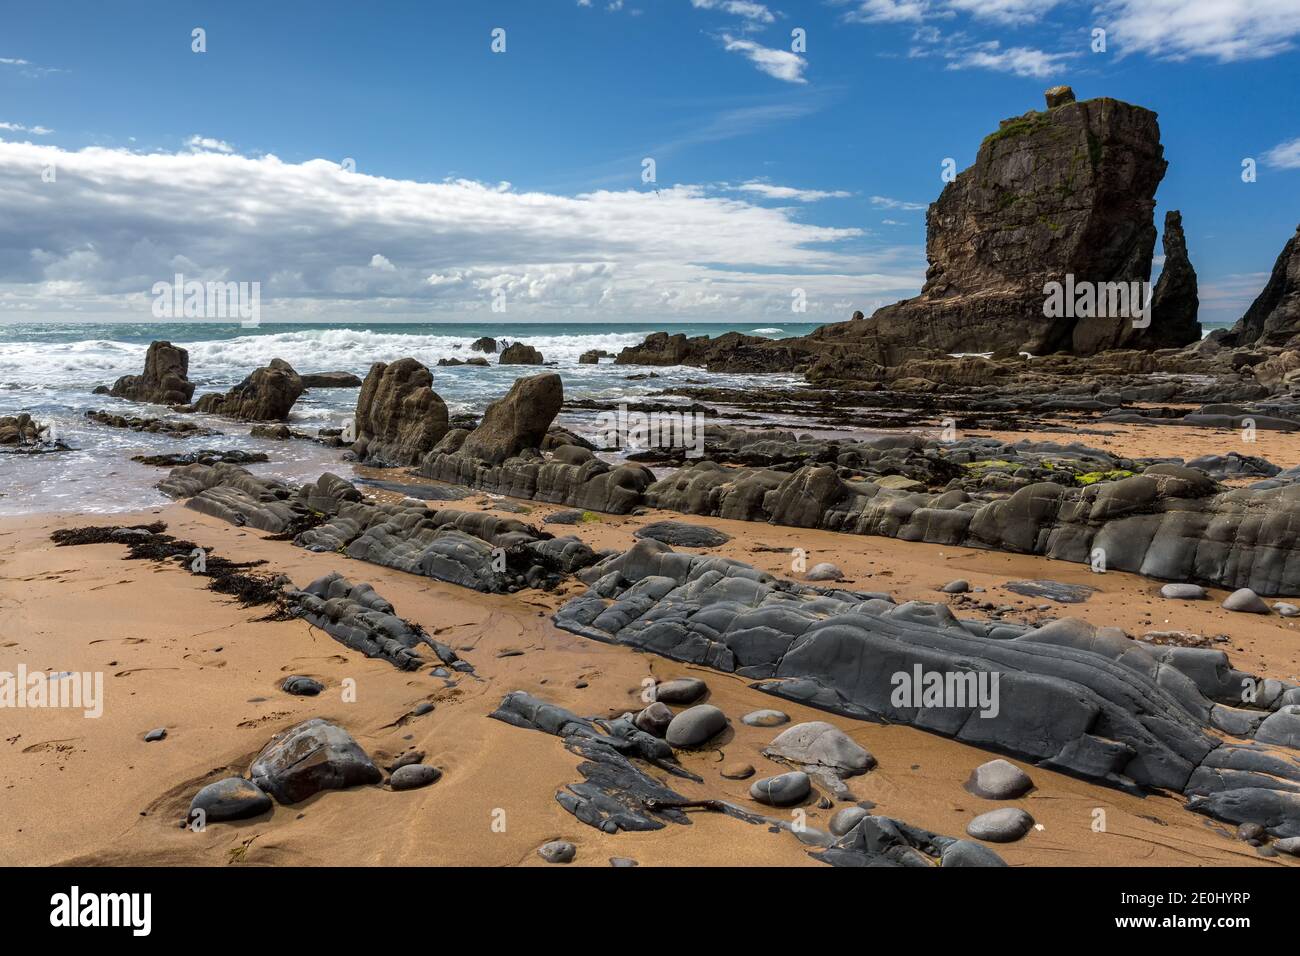 Le spectaculaire littoral rocheux de la baie de Sandomouth, North Cornwall, Angleterre, Royaume-Uni Banque D'Images